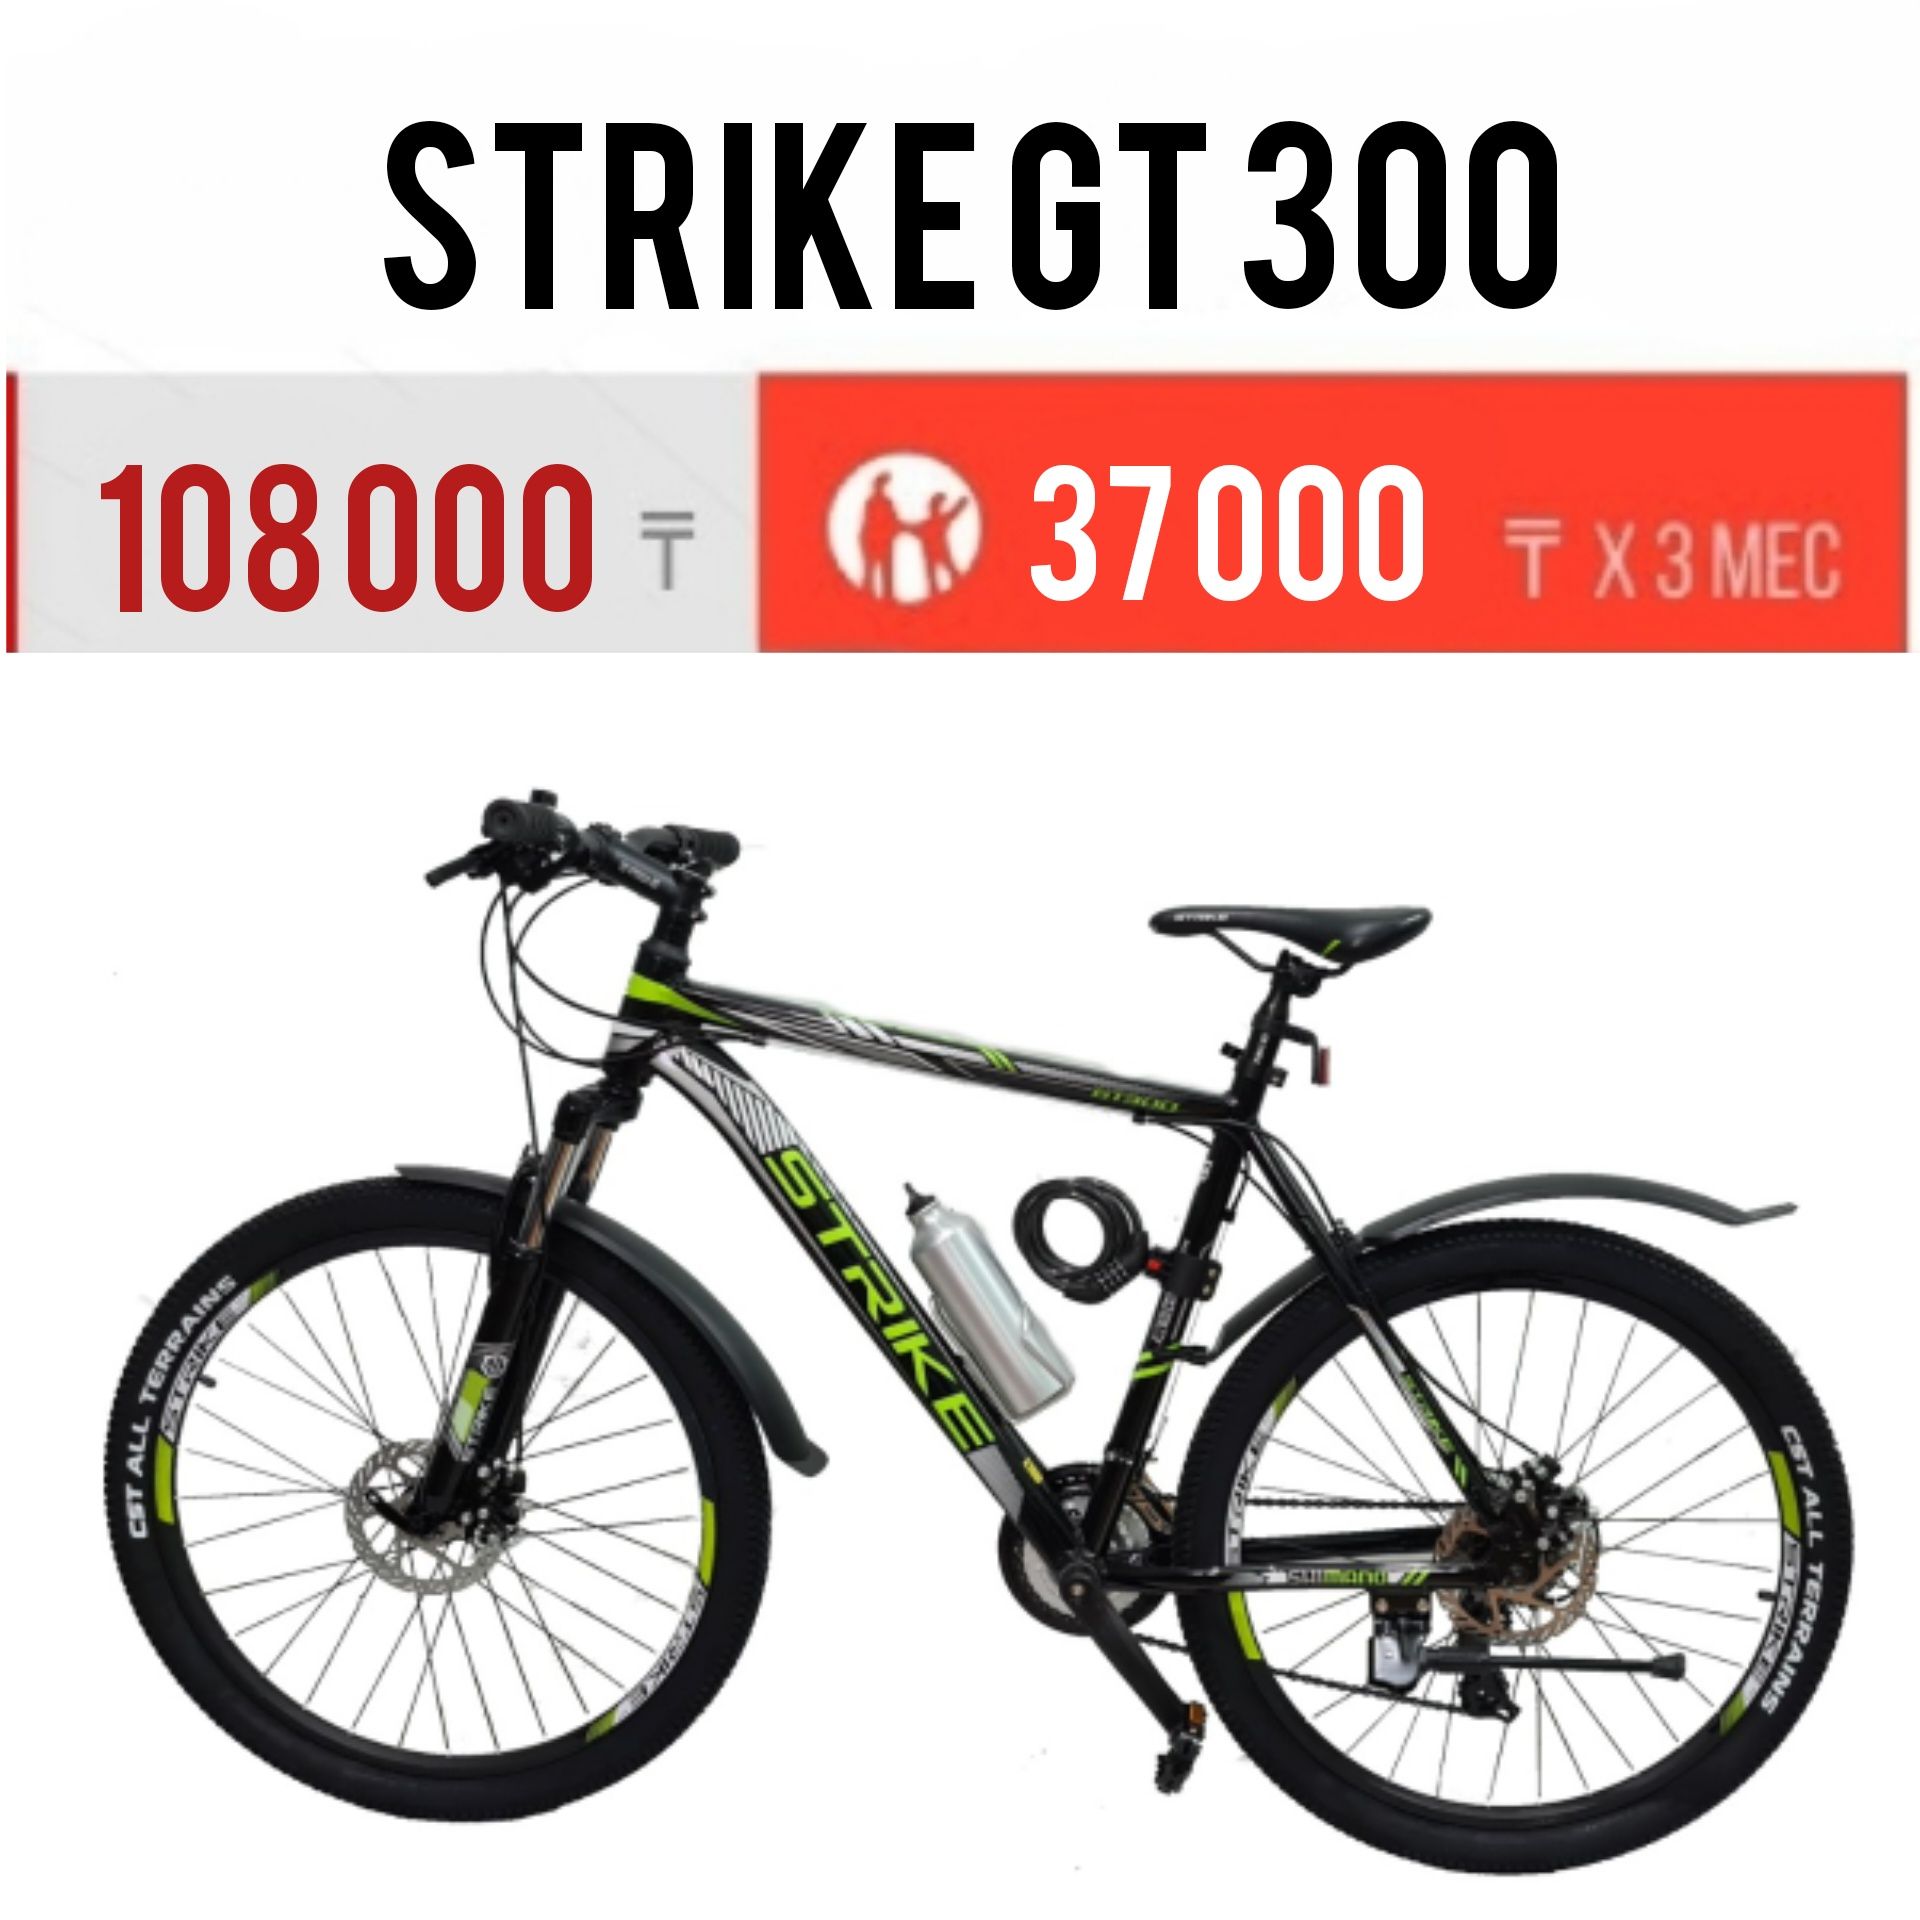 Велосипед Strike GT300. Рама 17, 19. Колеса 26.